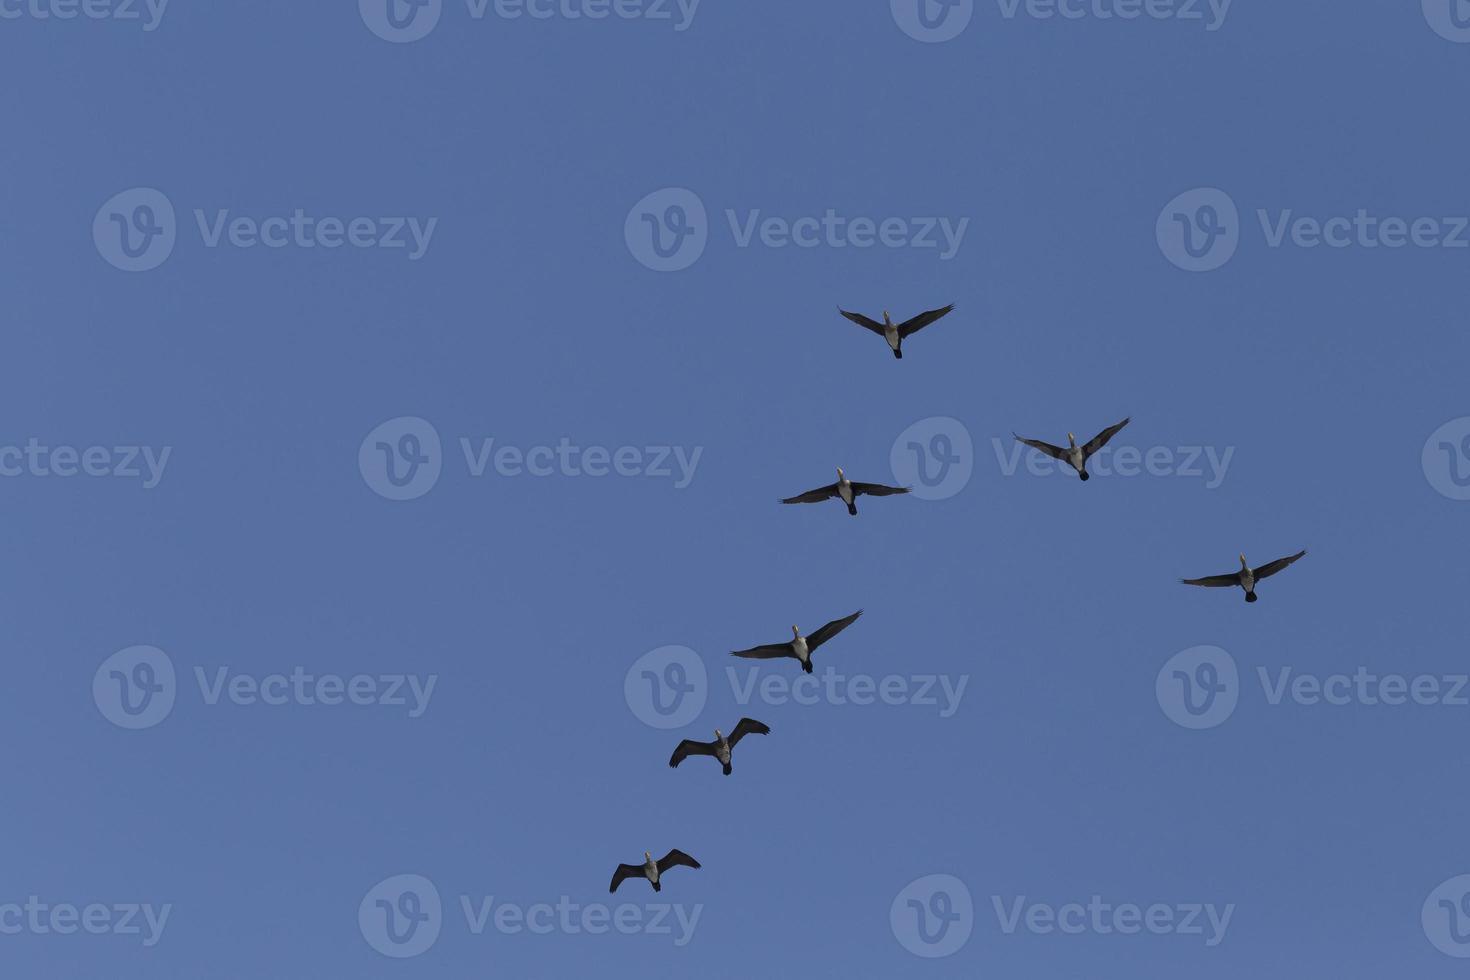 génial cormorans en volant dans une clair bleu ciel photo